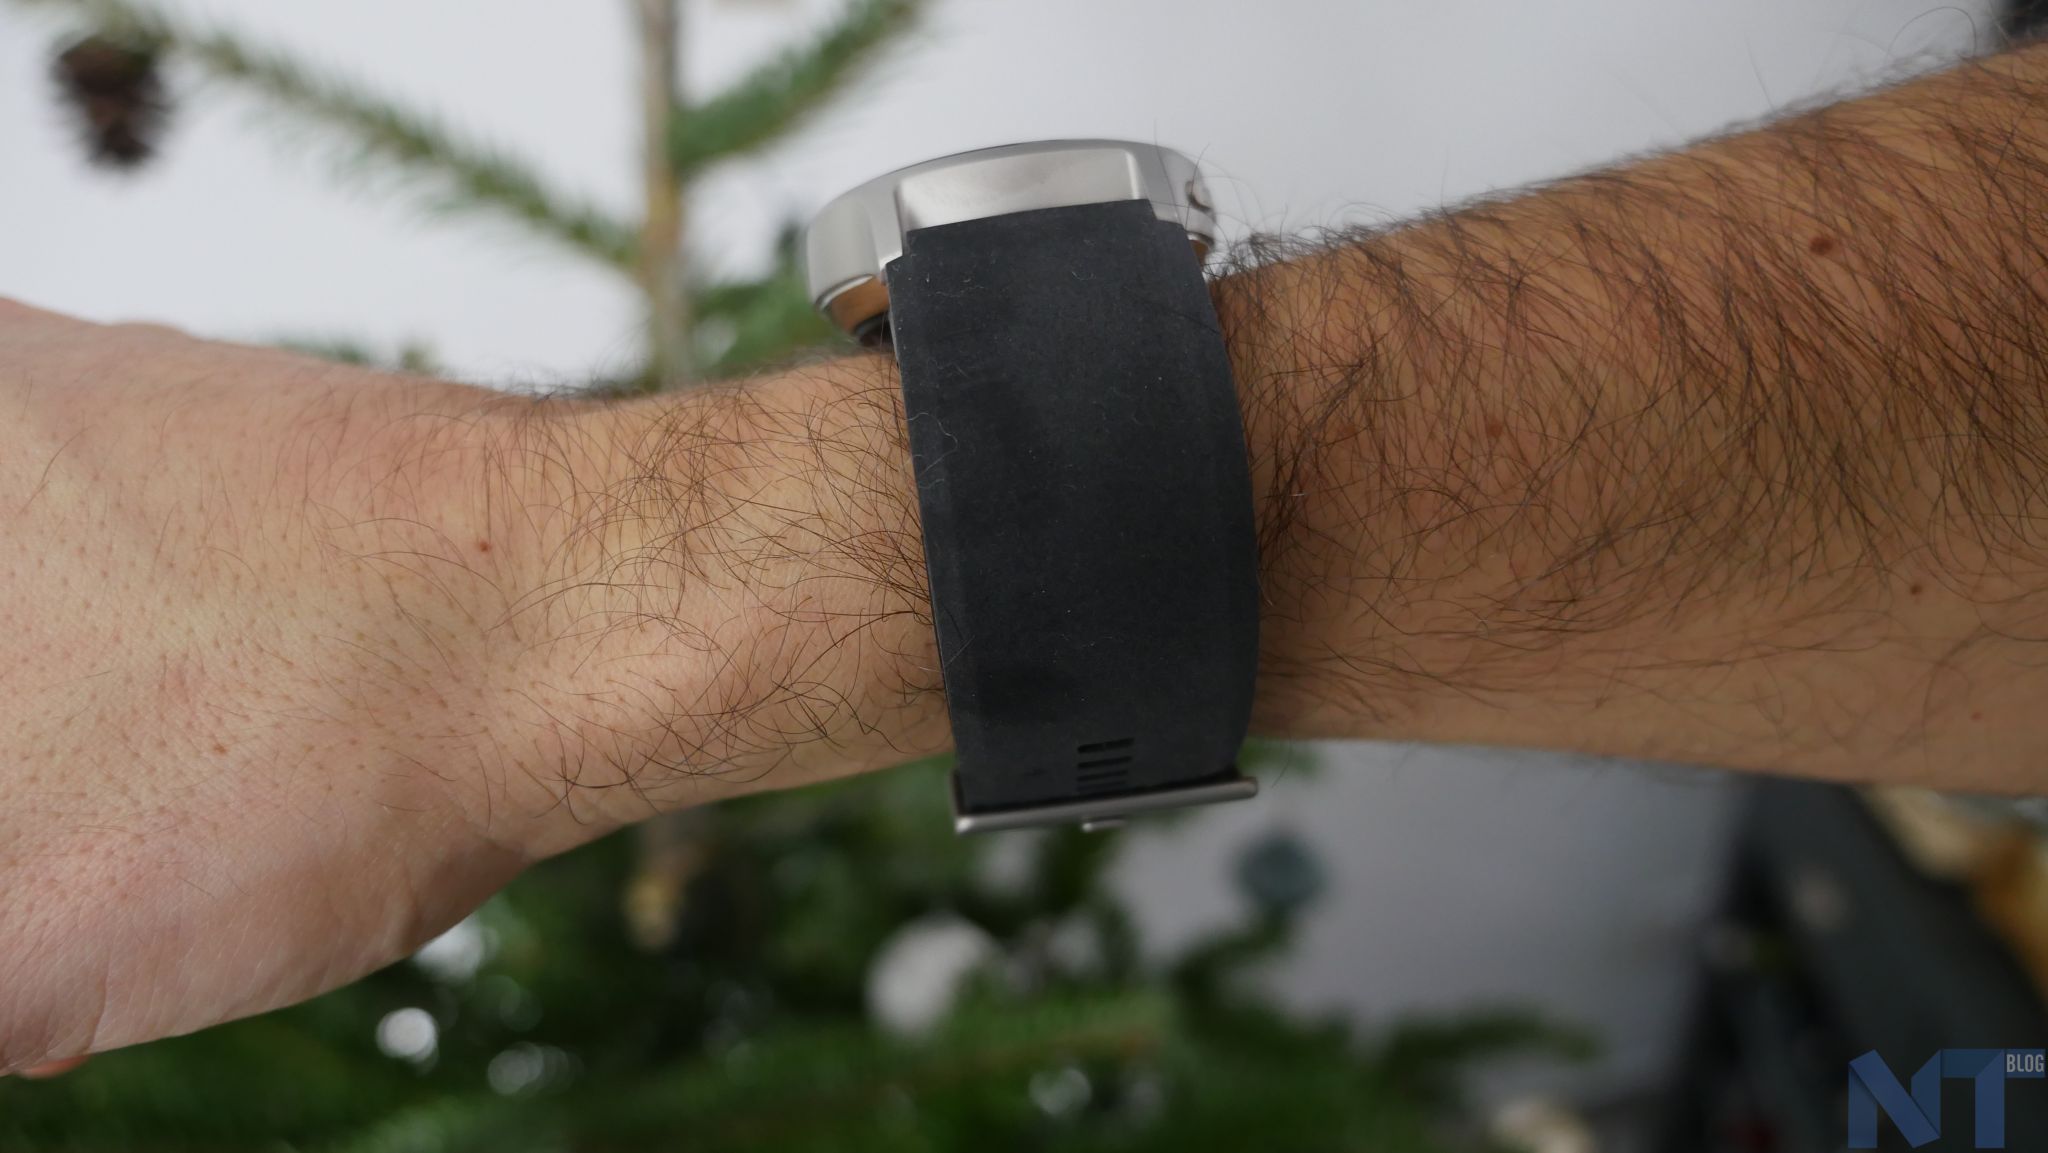 HeartGuide Omron : l'avis d' - AUTOMESURE Tensiomètre  portable présenté sous la forme d'une montre au poignet : HeartGuide  OmronLe constructeur Omron, commercialise depuis le 9 janvier 2019 (aux  Etats-Unis seulement) un